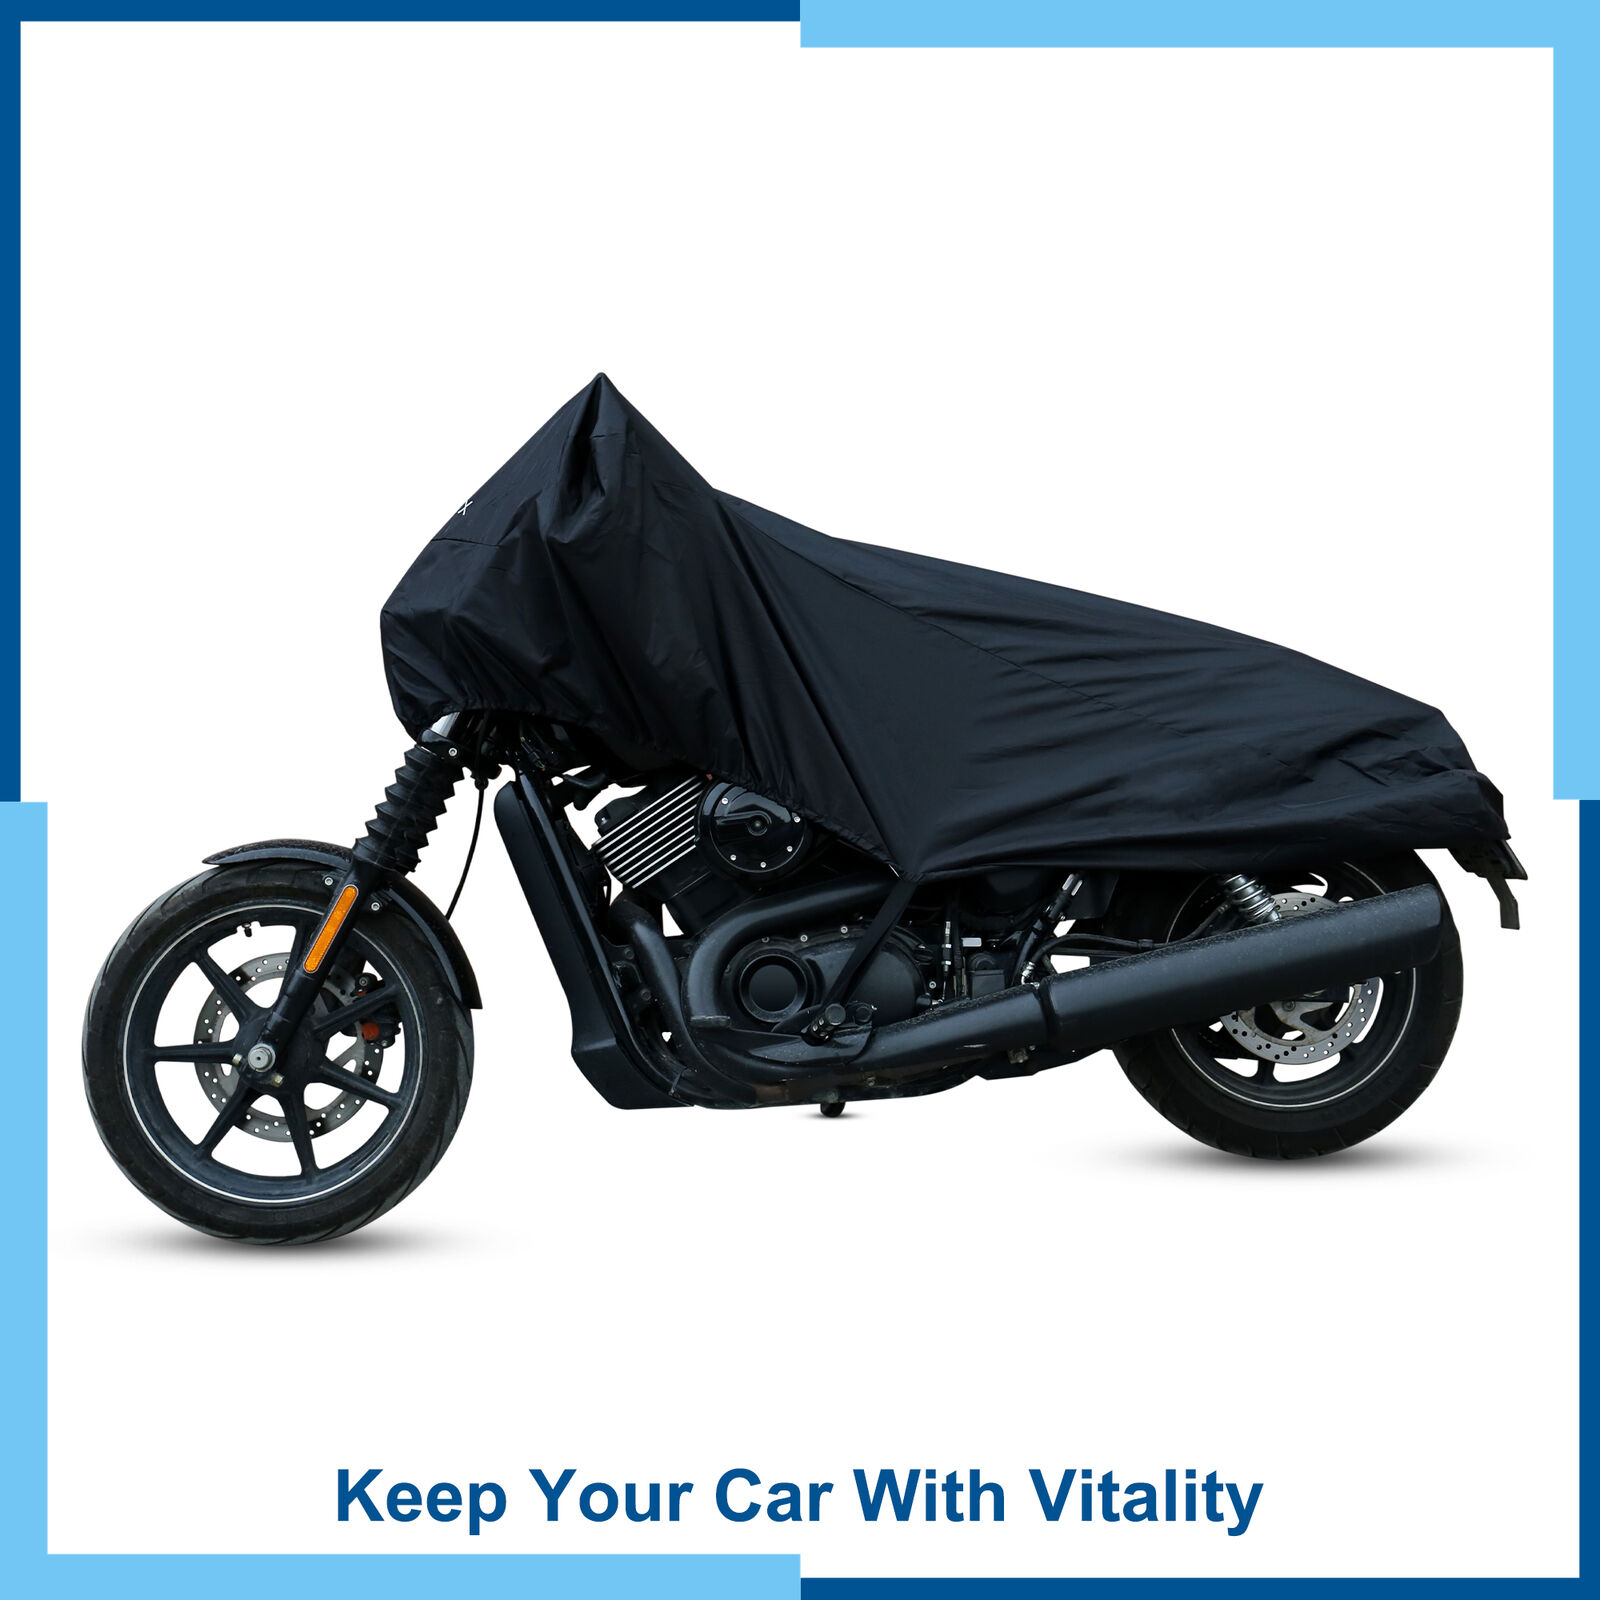 Pack(1) M Motorcycle Half Cover Lightweight Waterproof Rain Dust UV Protector